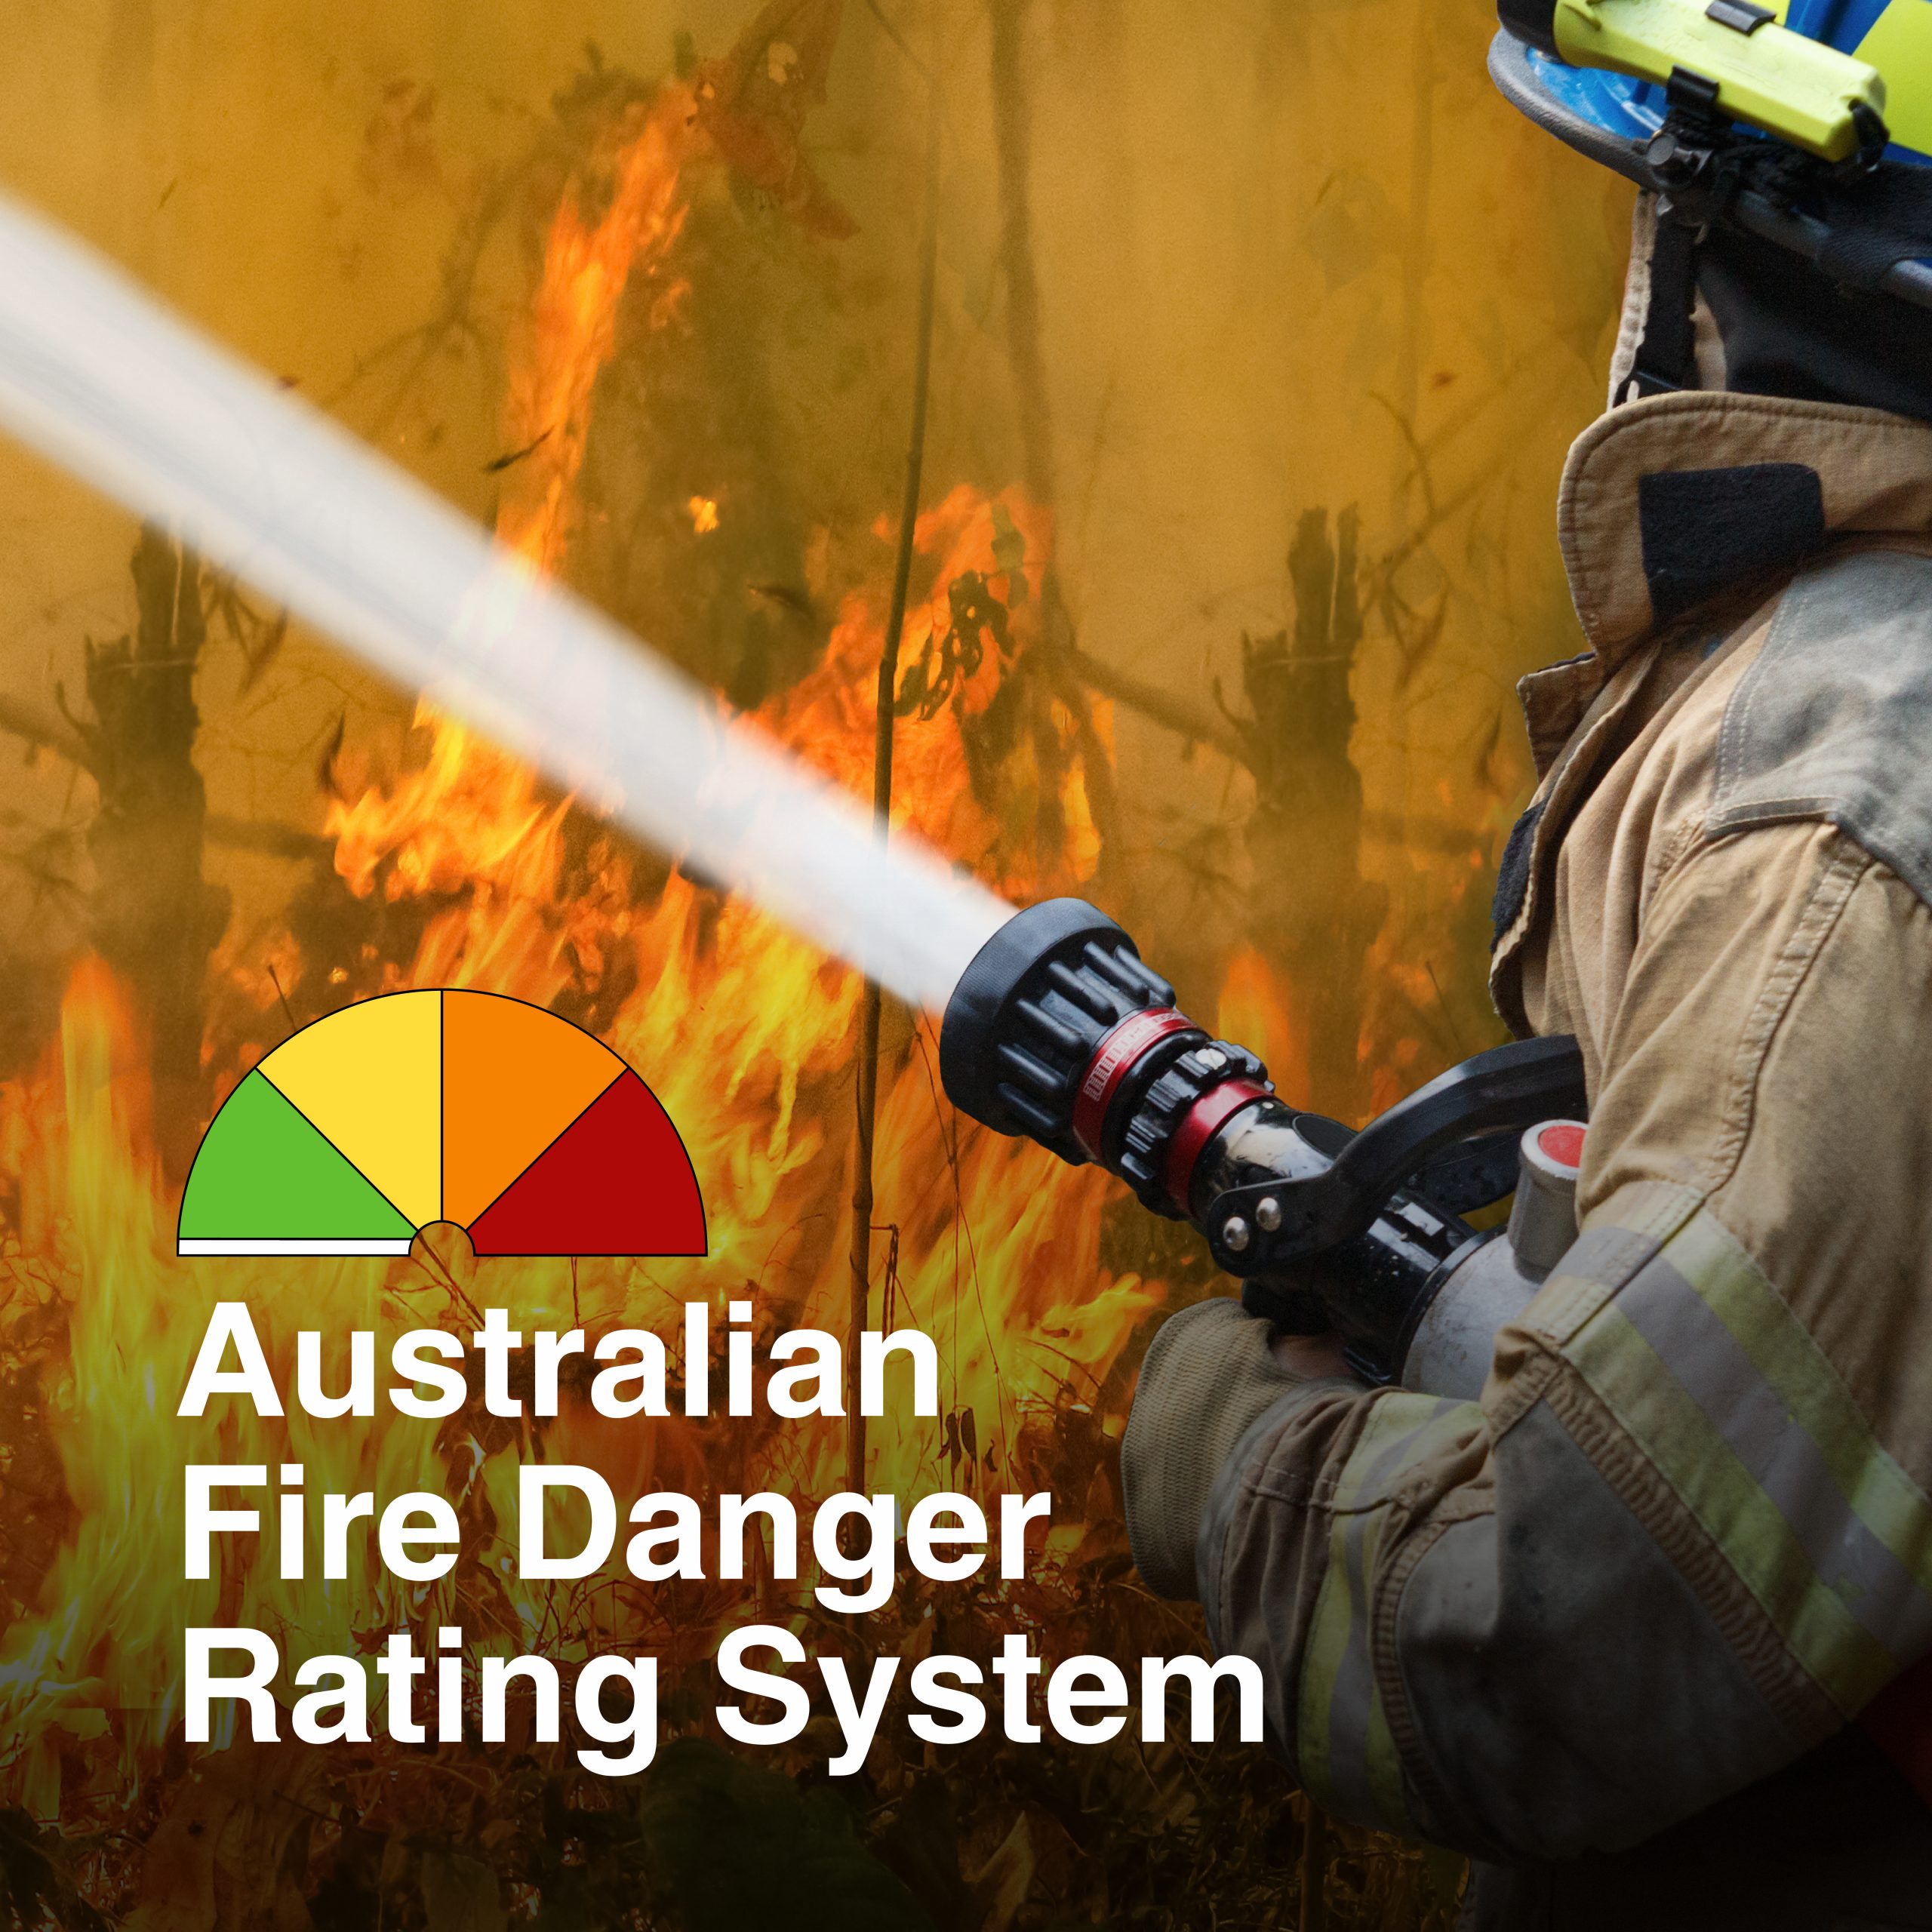 Australian fire danger rating system sign